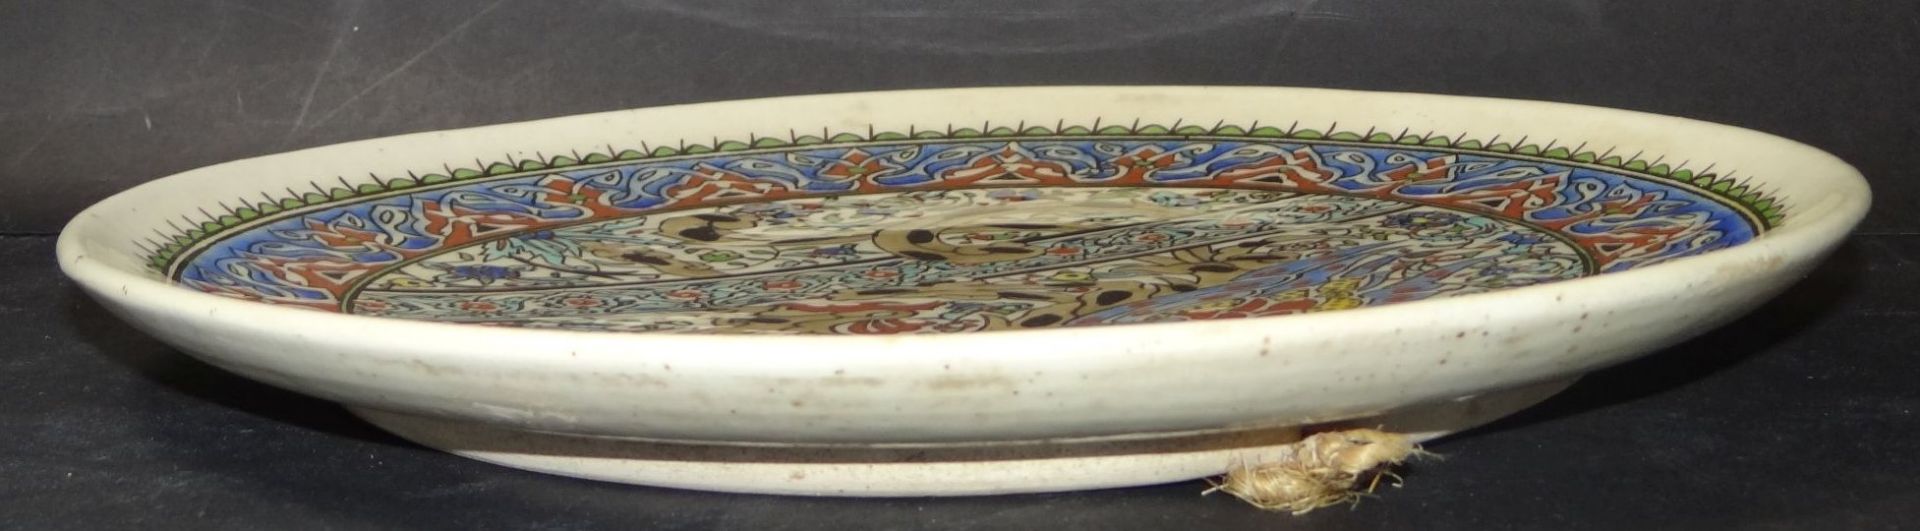 KUTAHYA Wandteller Keramik "Elhamra Cini" handbemalt, D-33 cm - Bild 4 aus 4